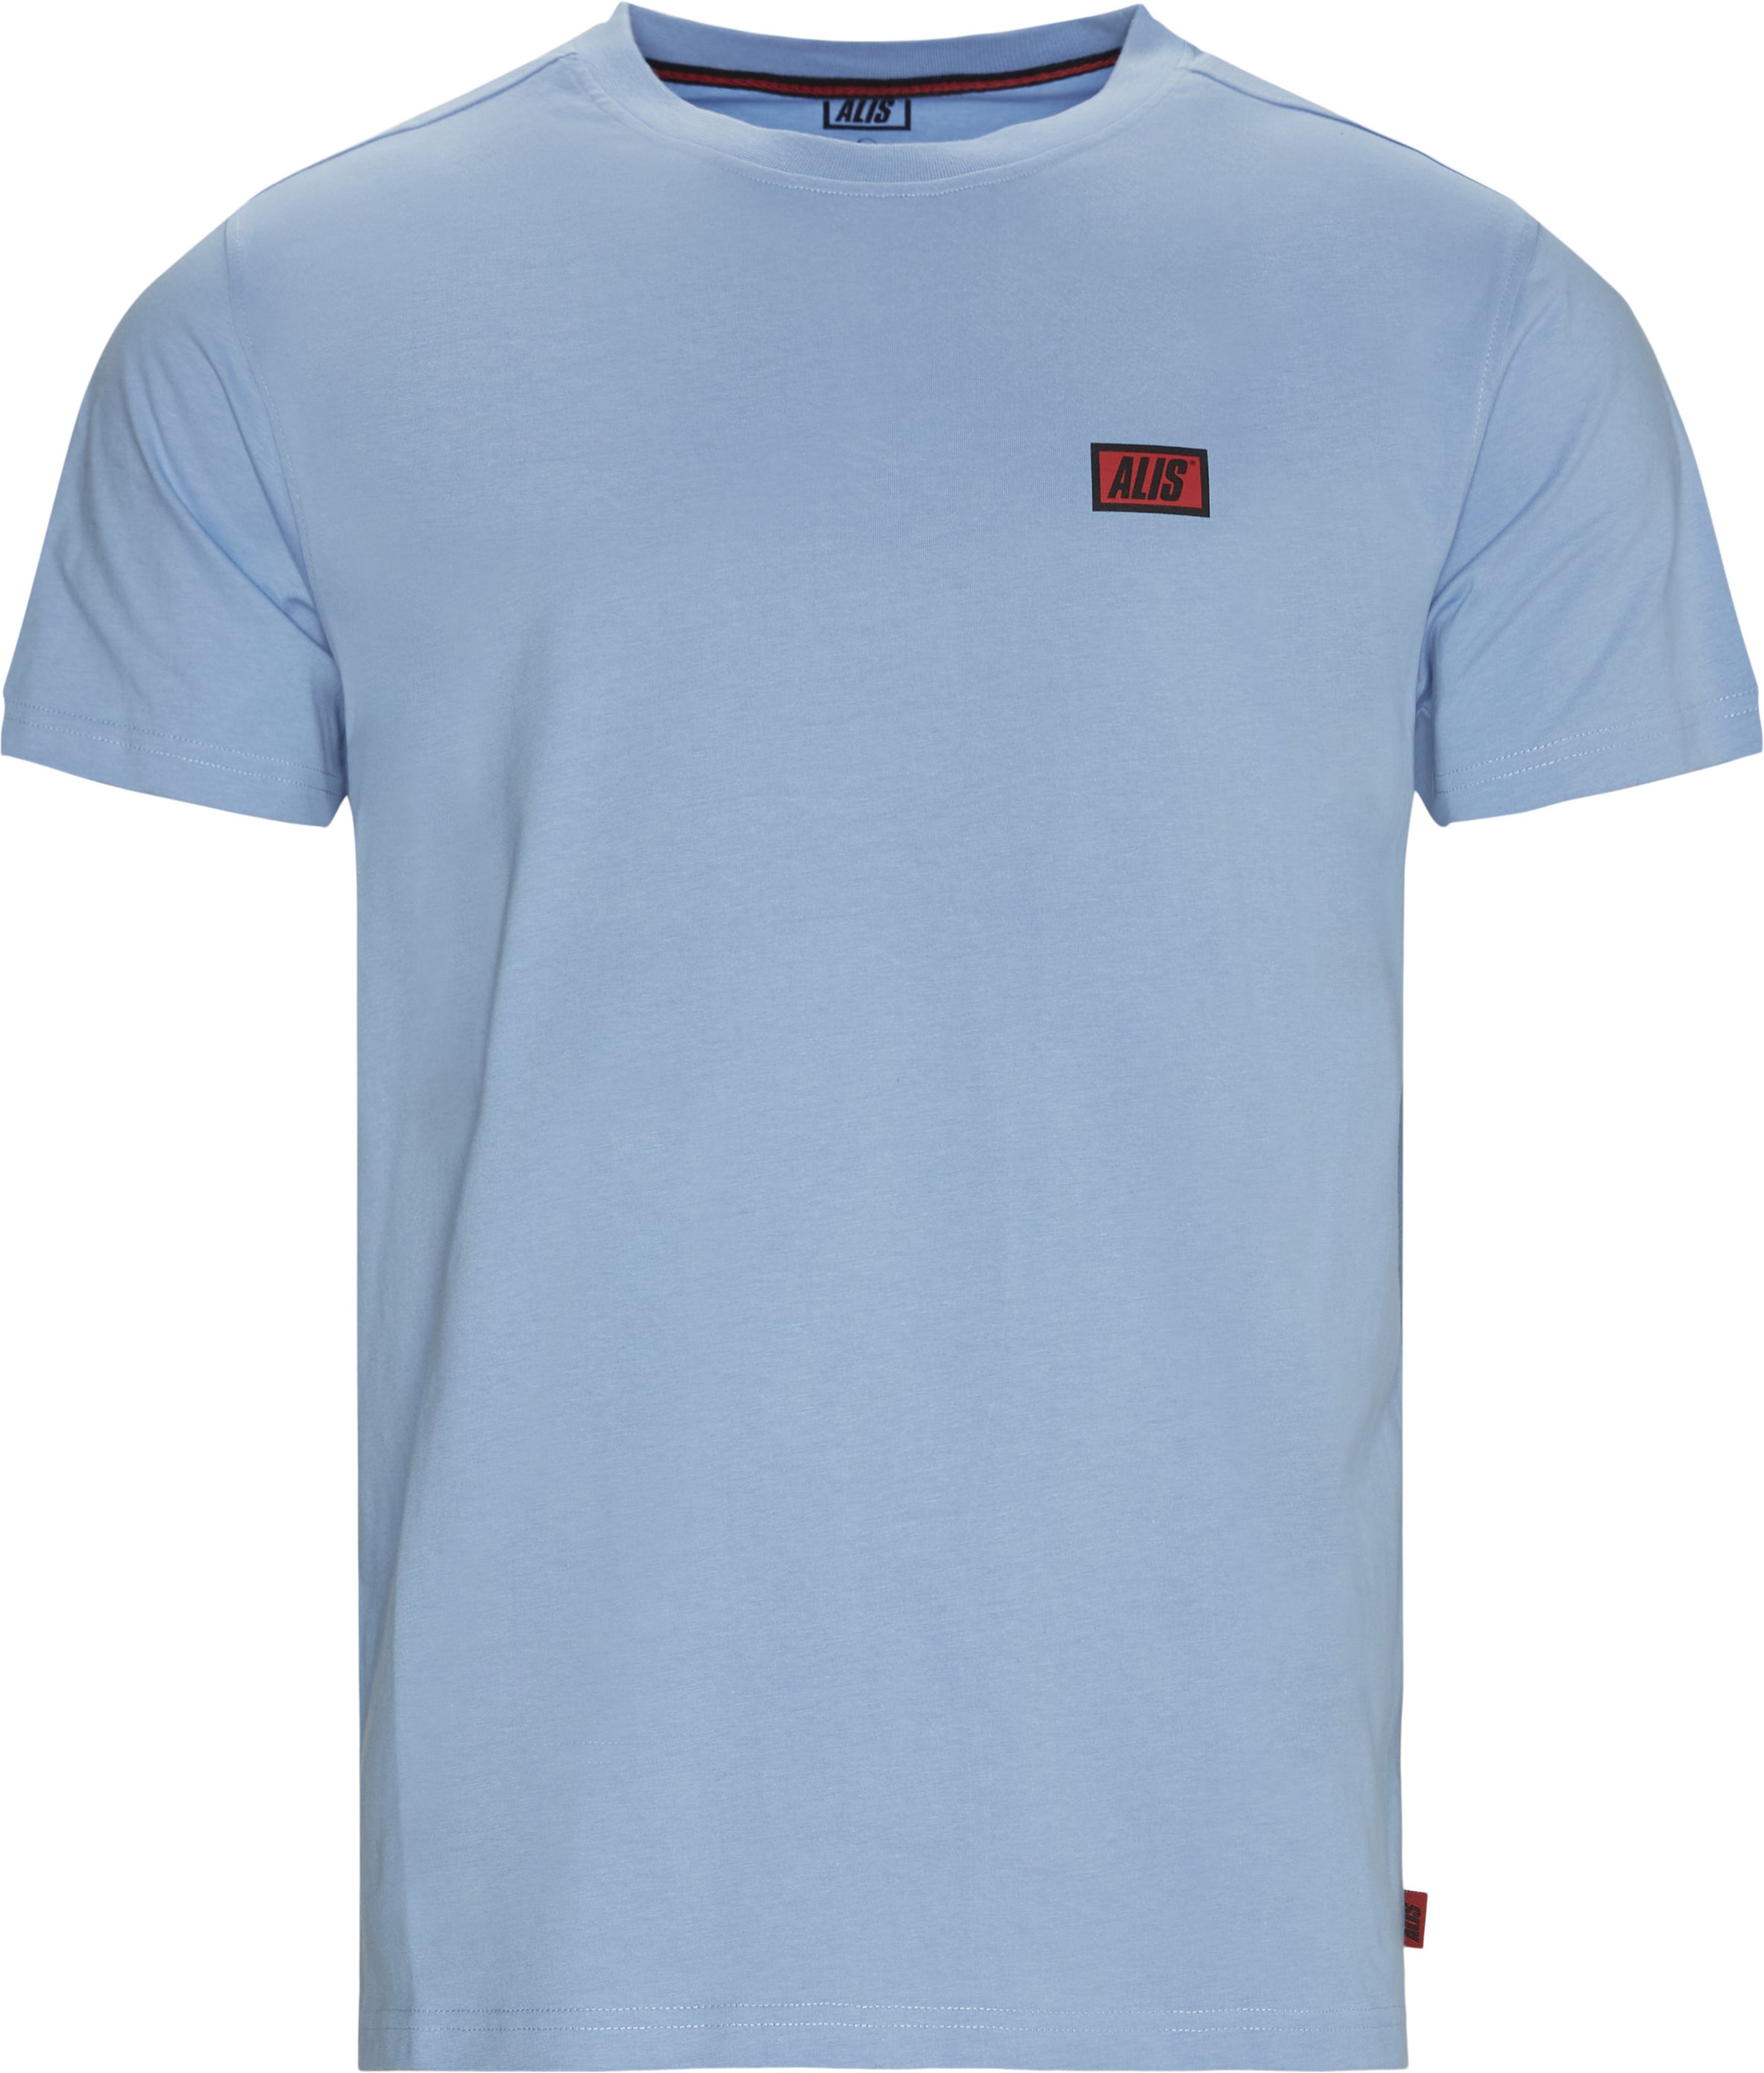 Am3001 Tee - T-shirts - Regular fit - Blue